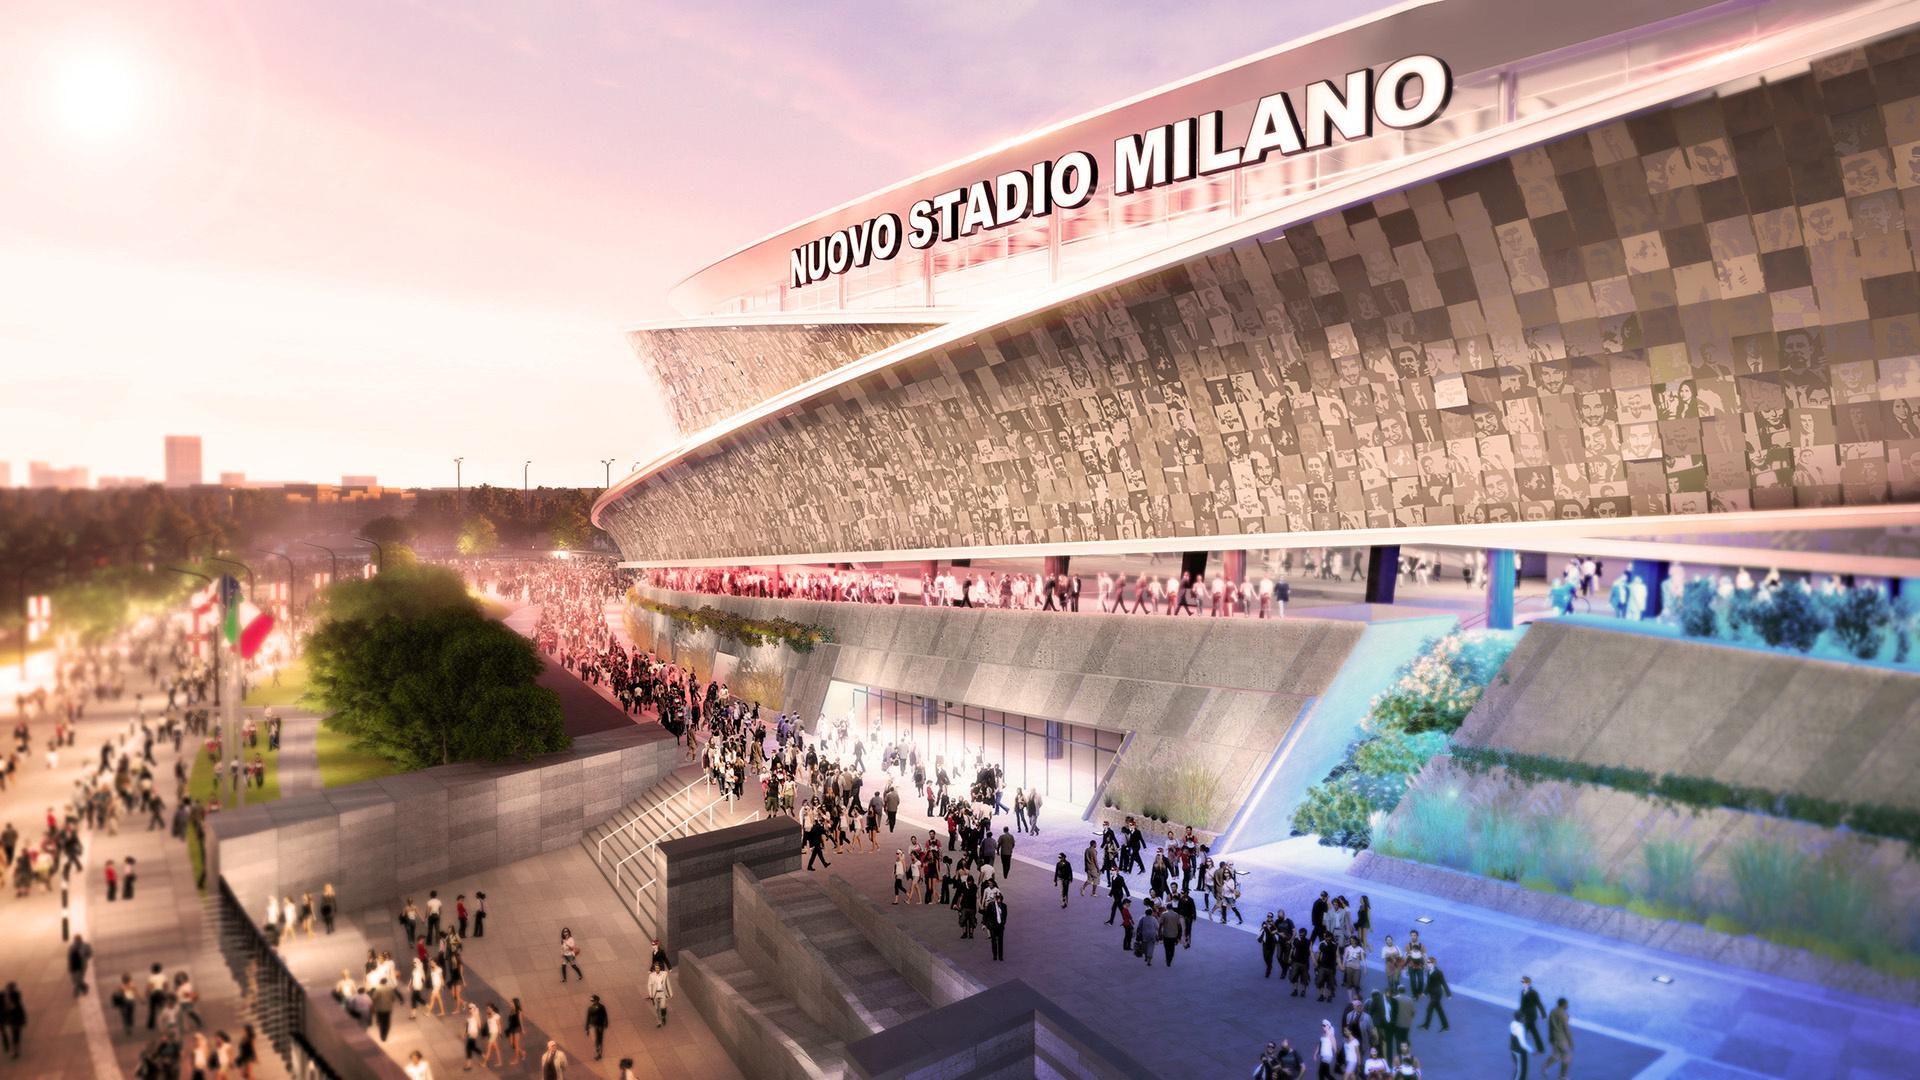 Taj novi stadion bio bi ključni element šireg građevinskog plana vrijednog 1.2 milijarde eura